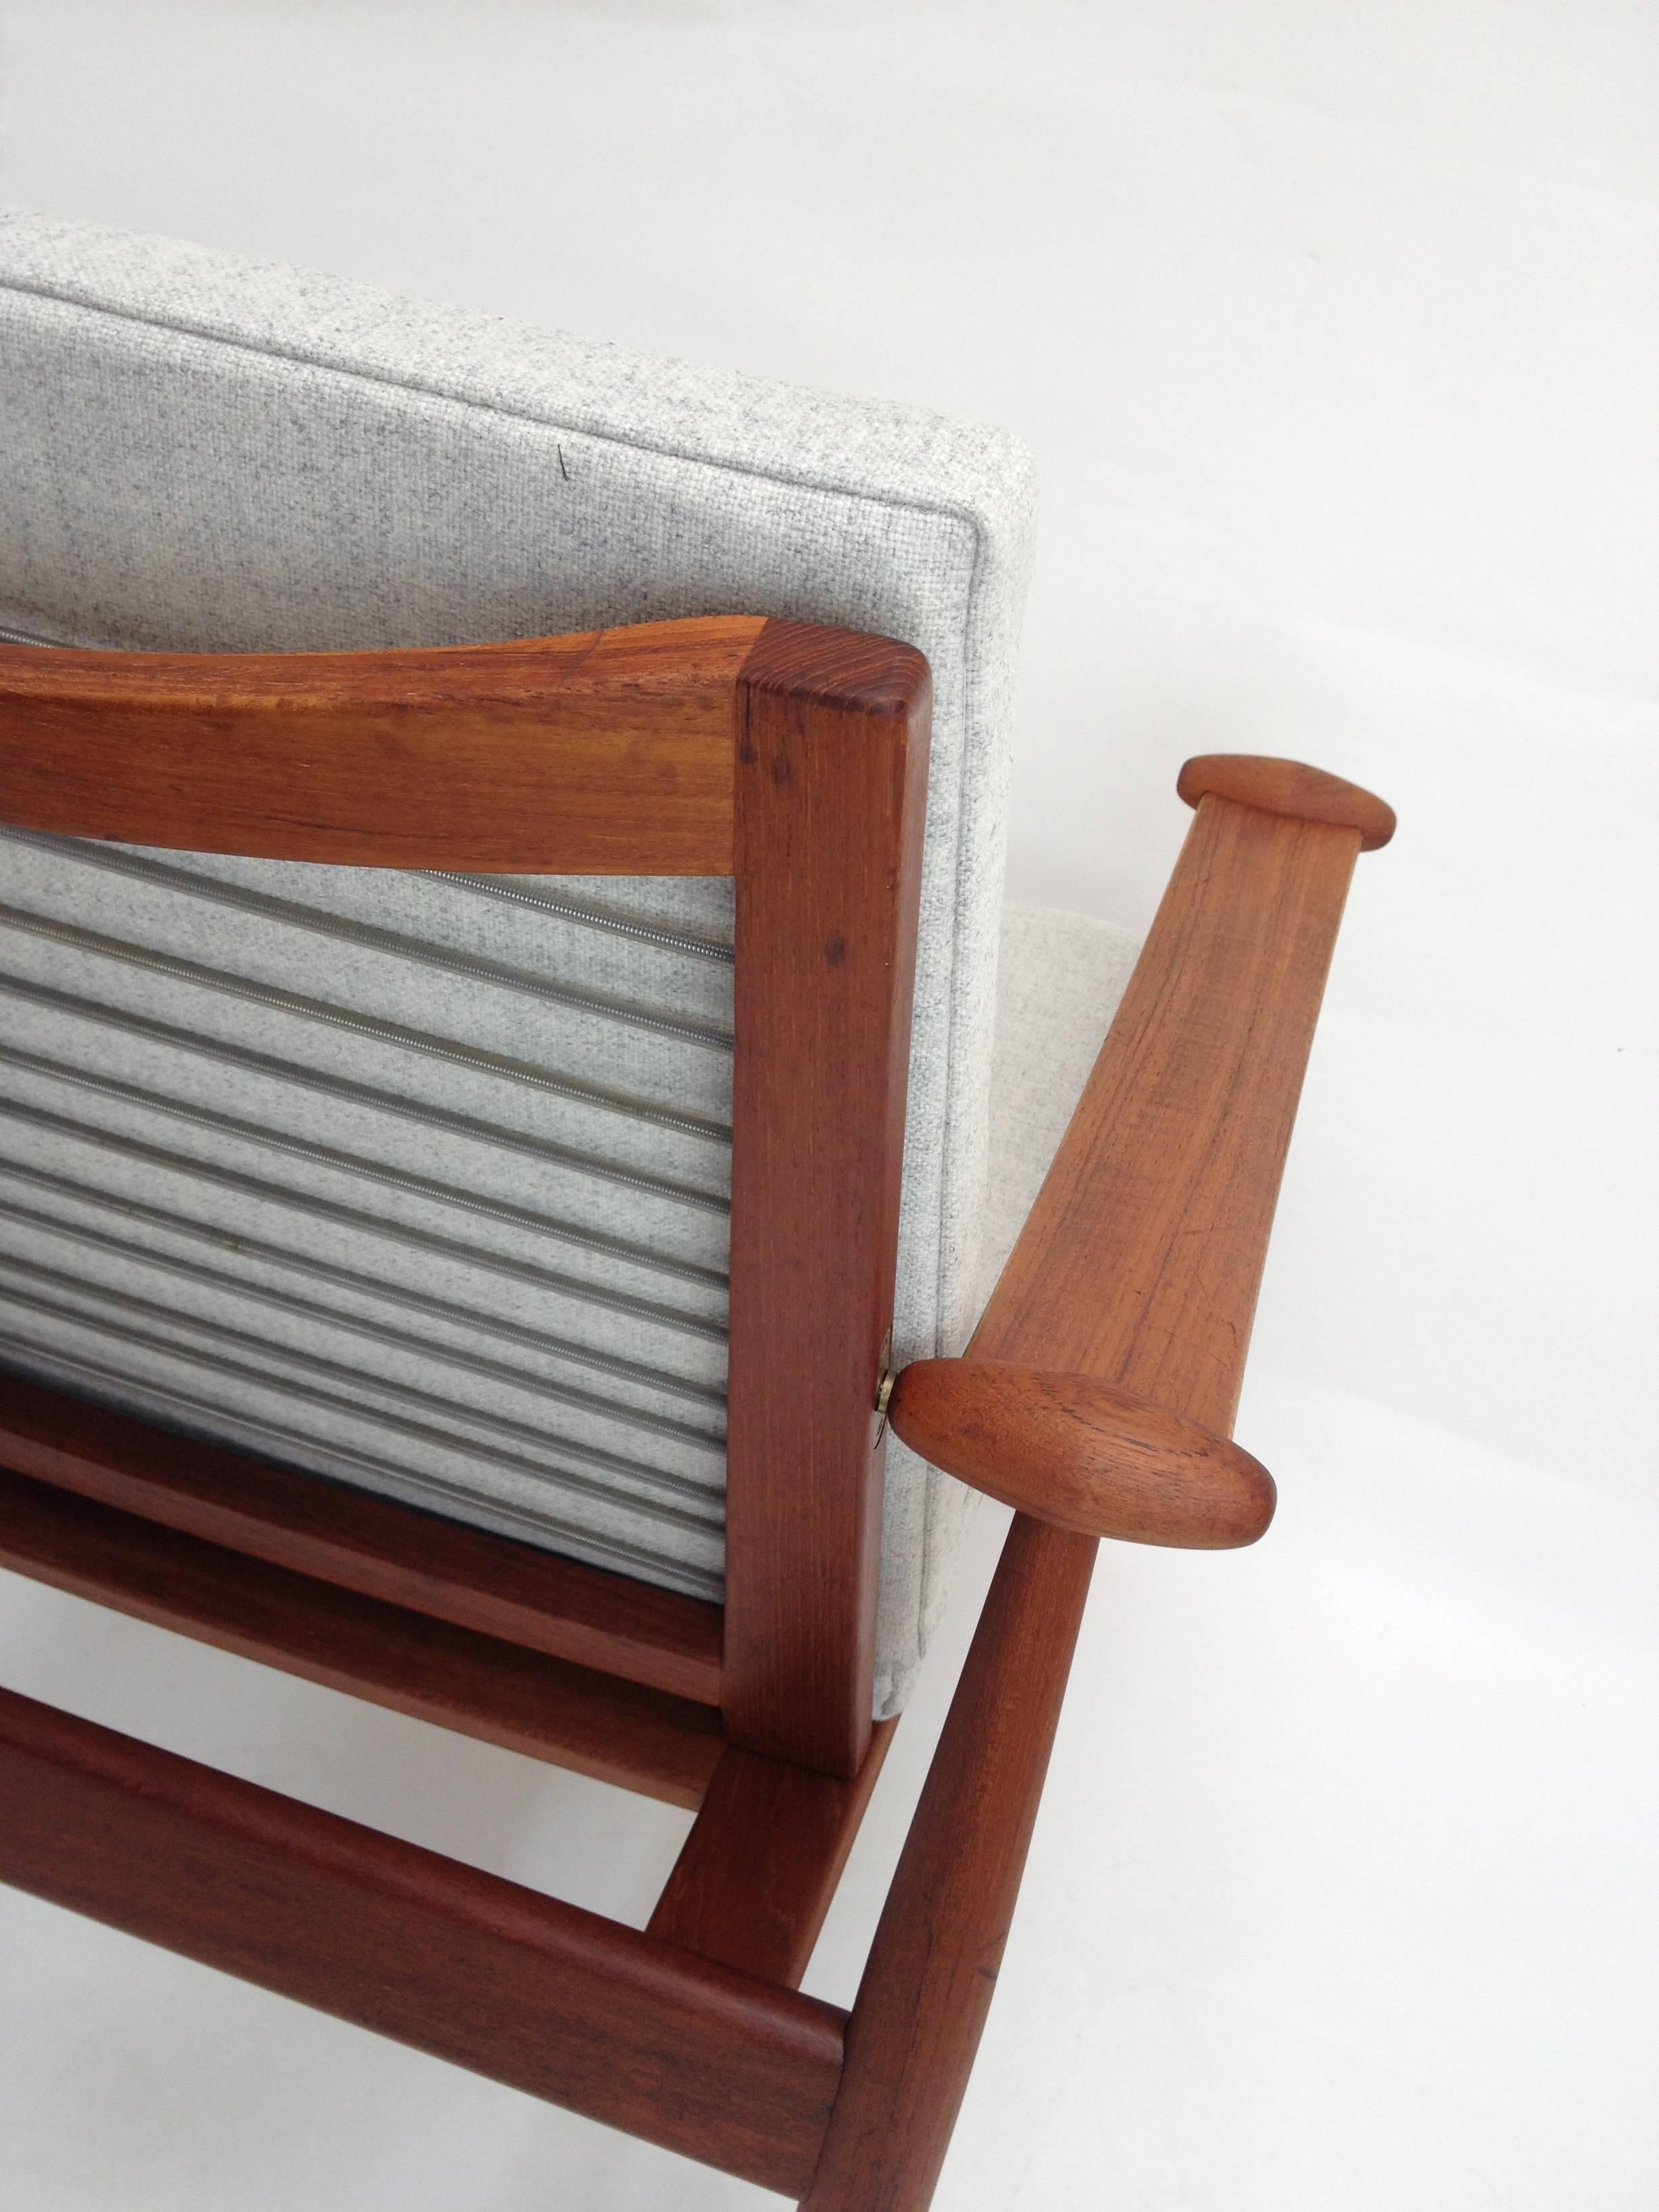 1950s Danish Teak Easy Chair Designed by Finn Juhl for France & Daverkosen For Sale 4